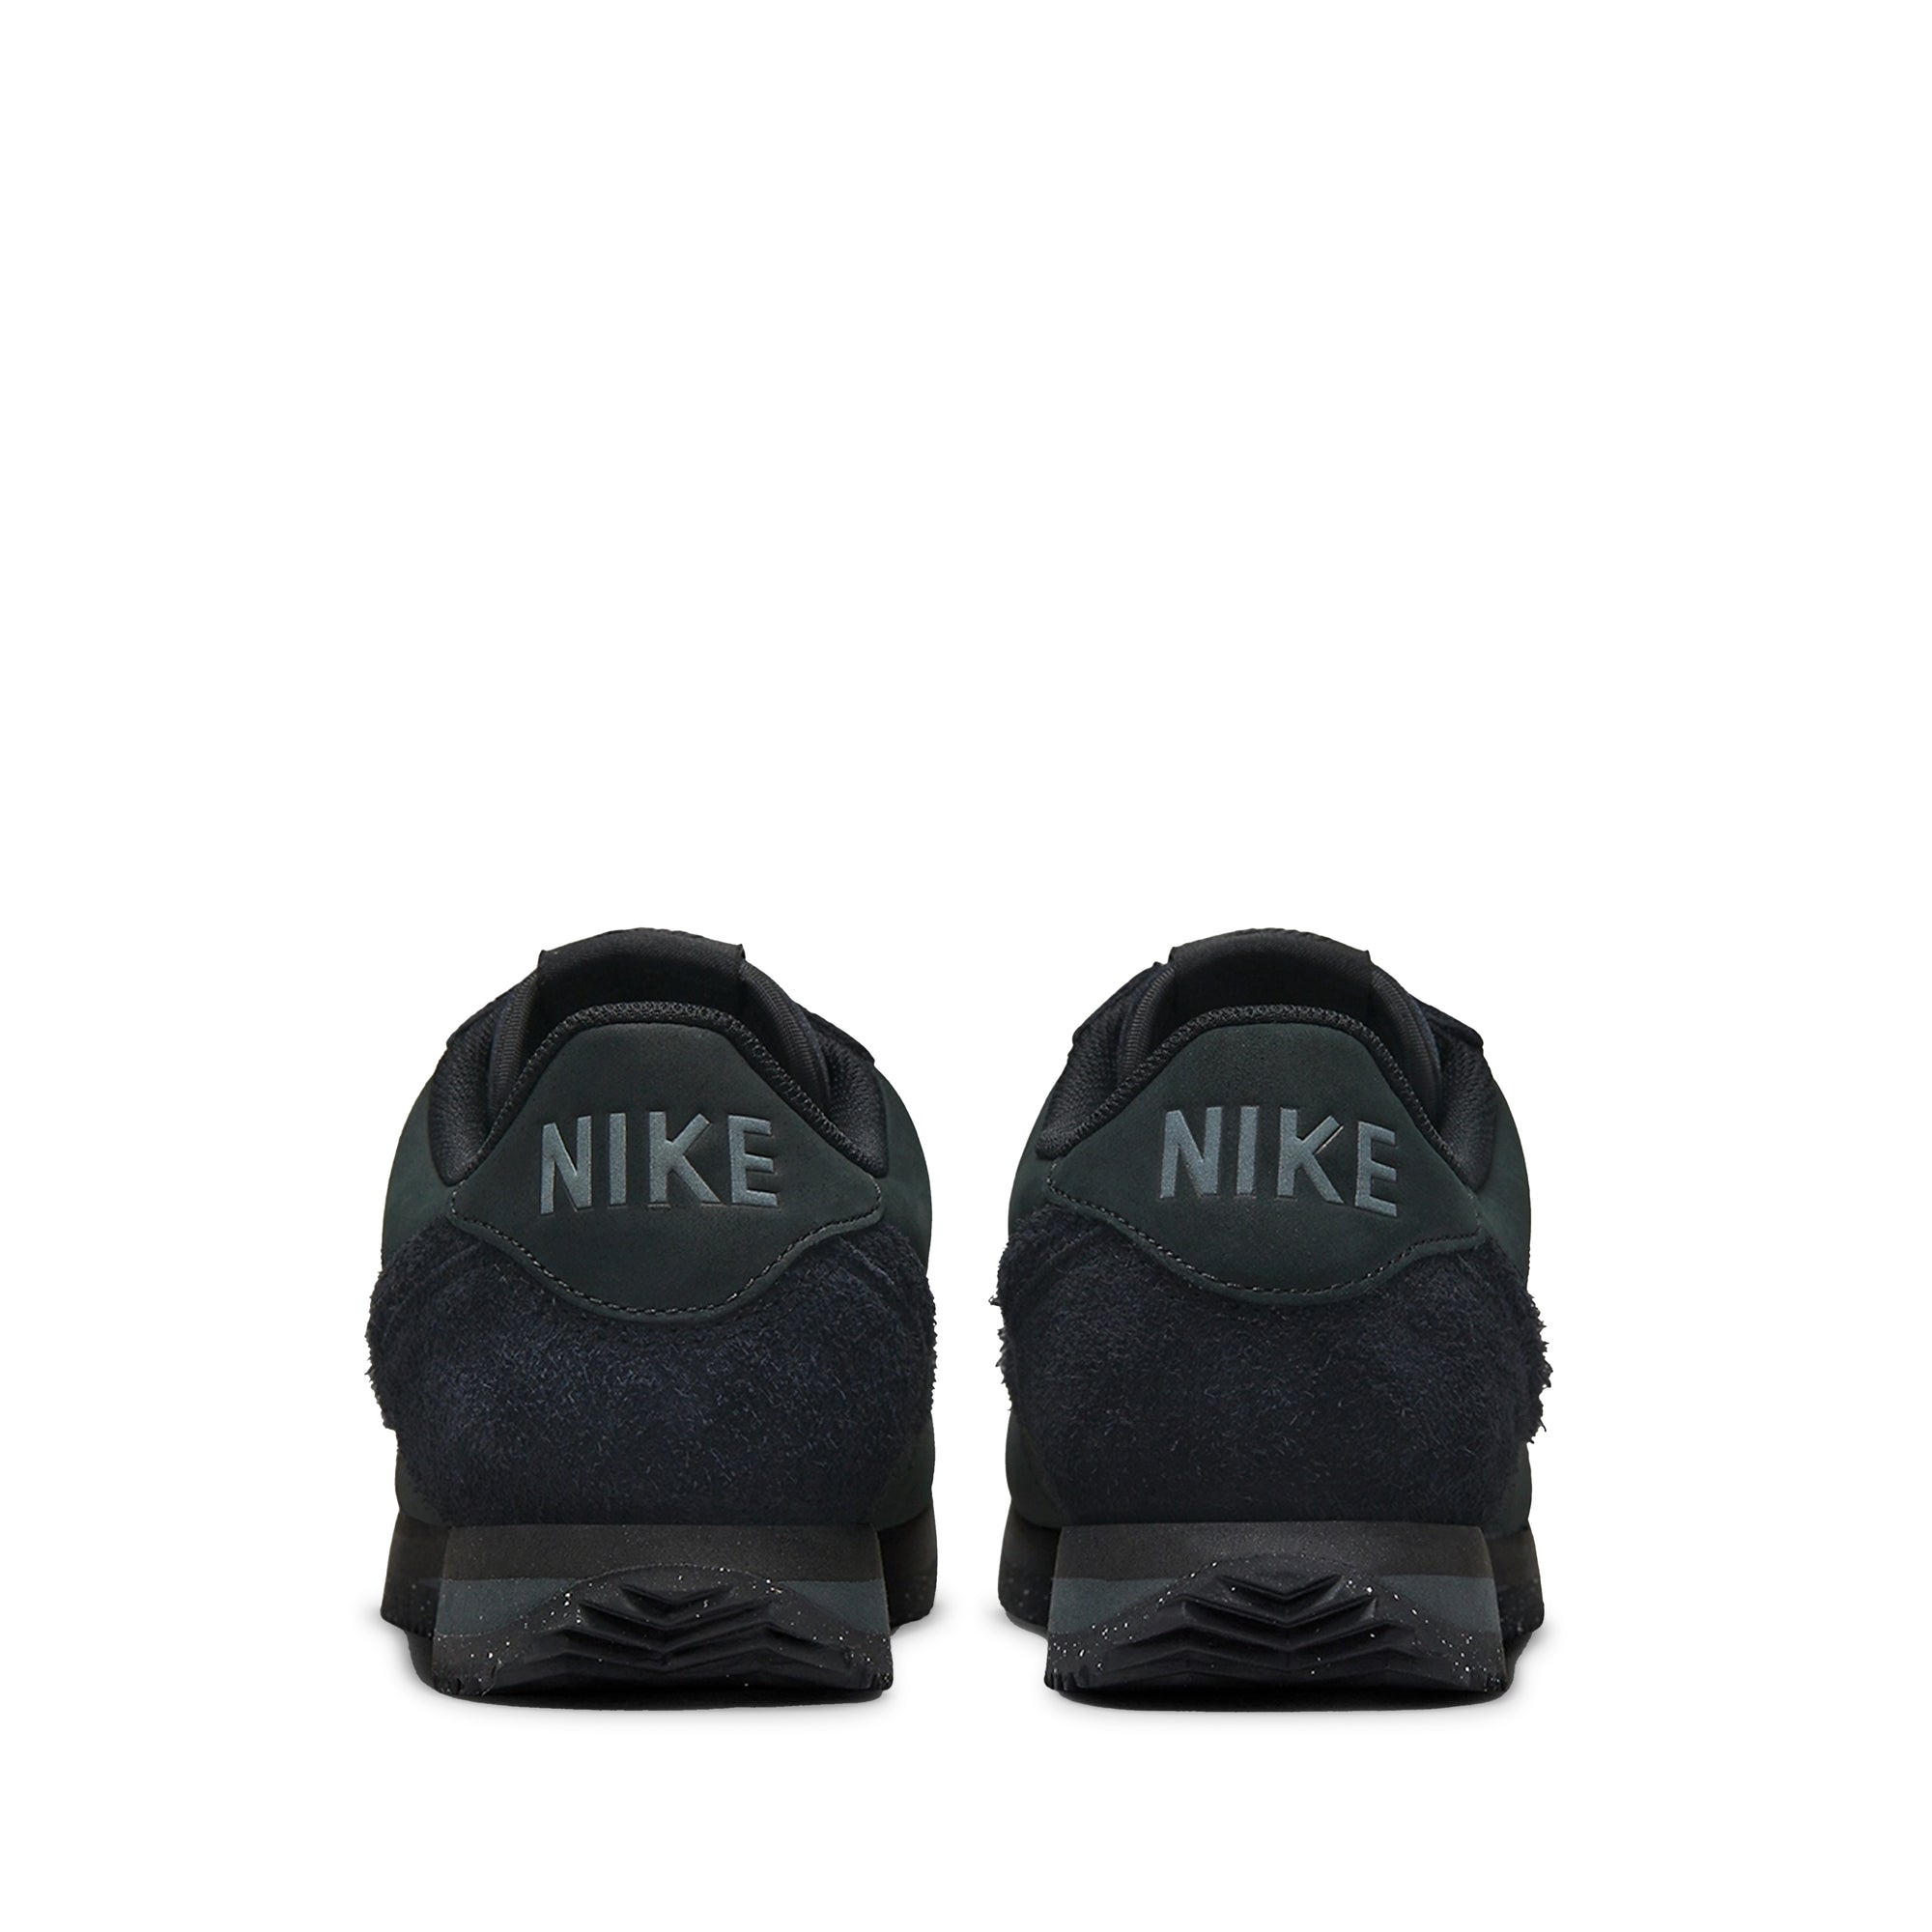 Nike Wmns Cortez PRM *Triple Black* – buy now at Asphaltgold